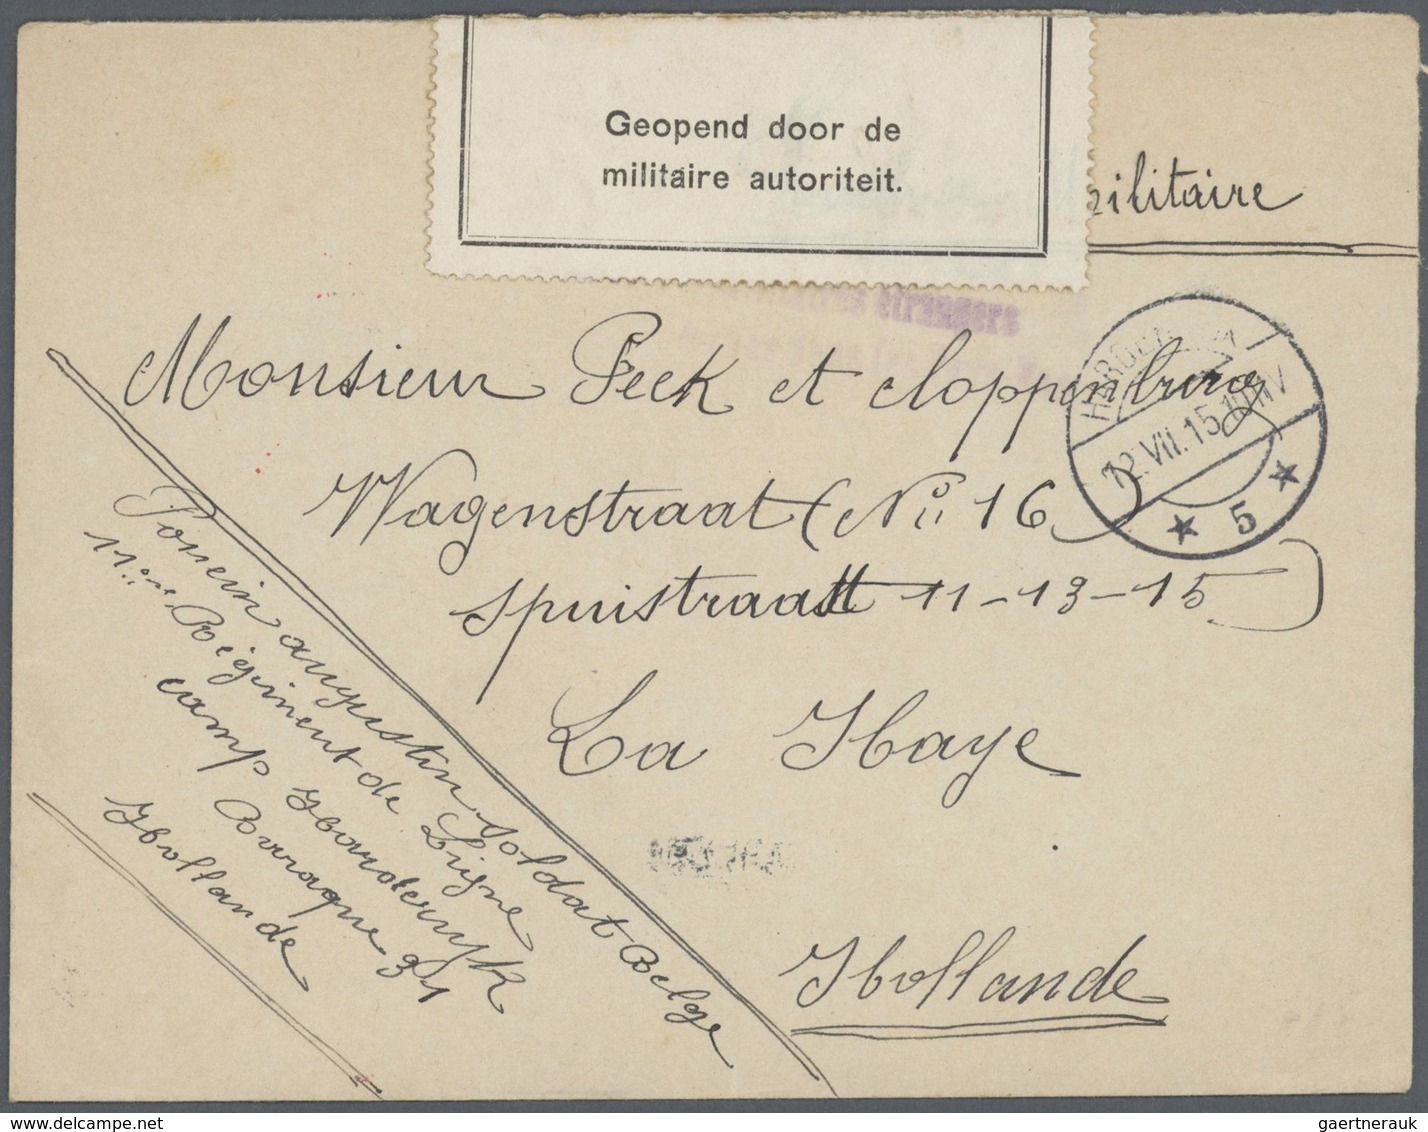 GA/Br/Brfst Niederlande: 1869 - 1930 ca. Spannende Partie von über 100 Belegen, dabei Briefe, Ganzsachen, einieg